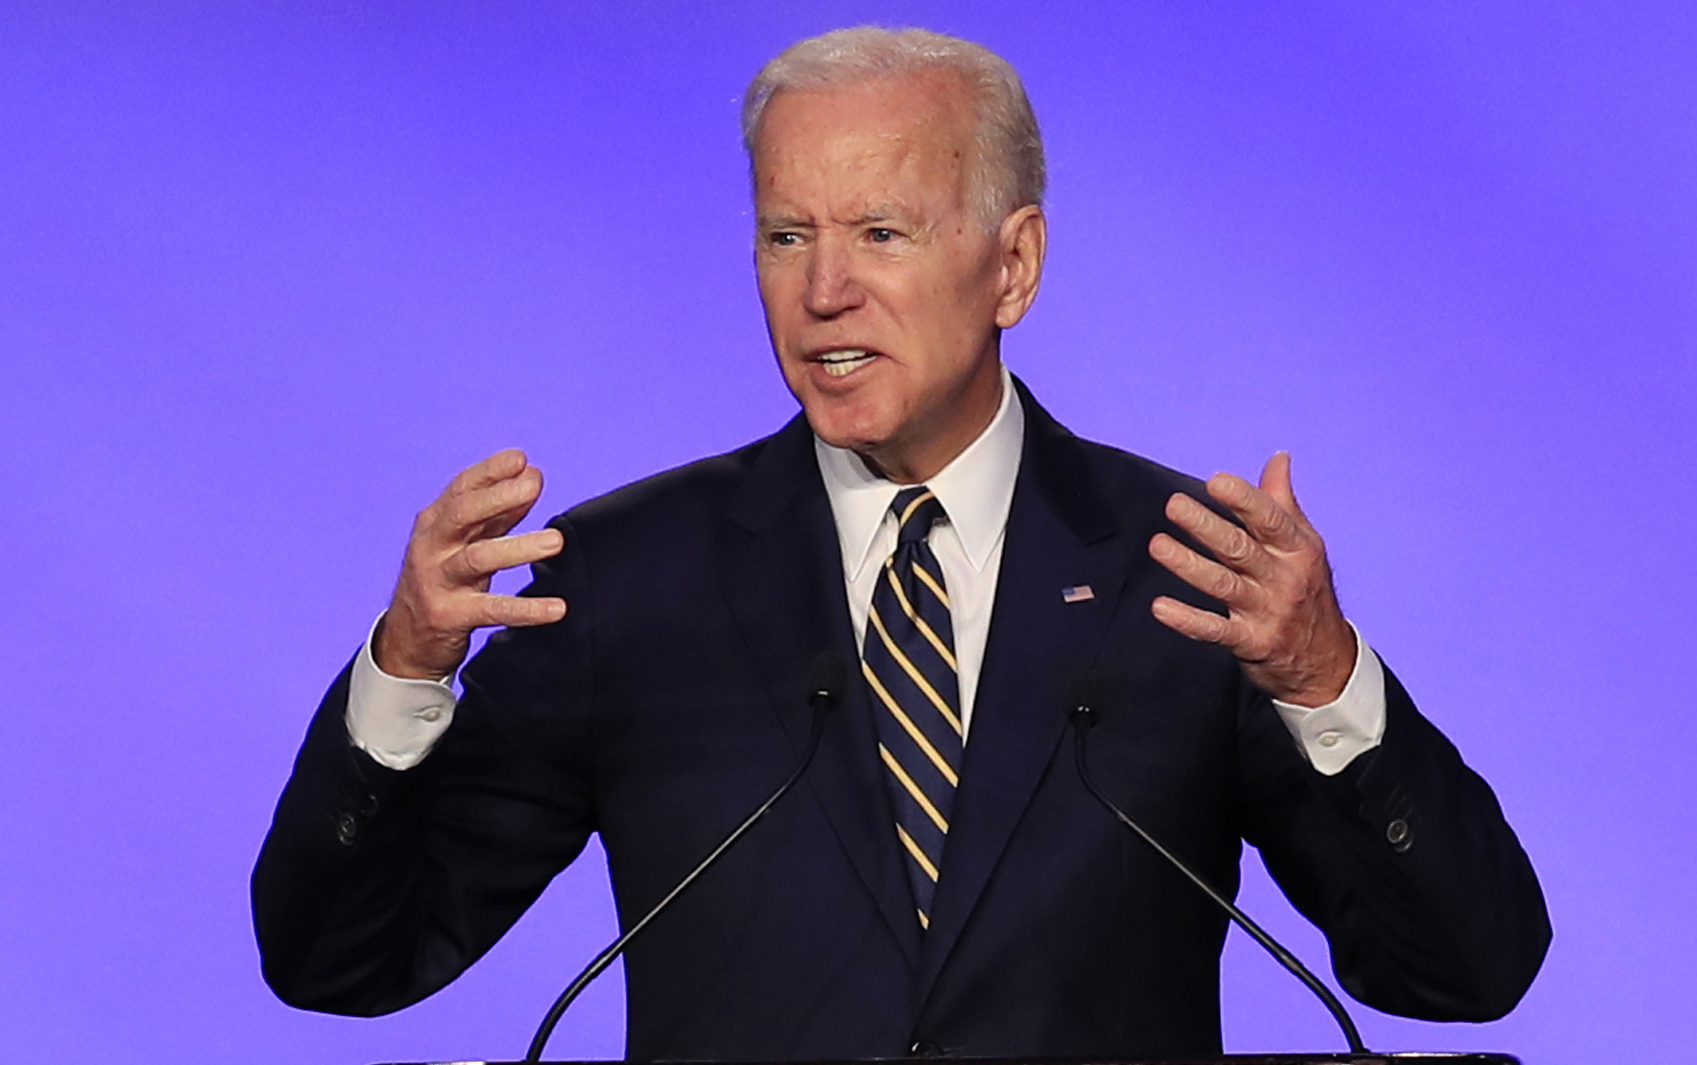 Joe Biden asegura que acoso sexual “nunca sucedió”